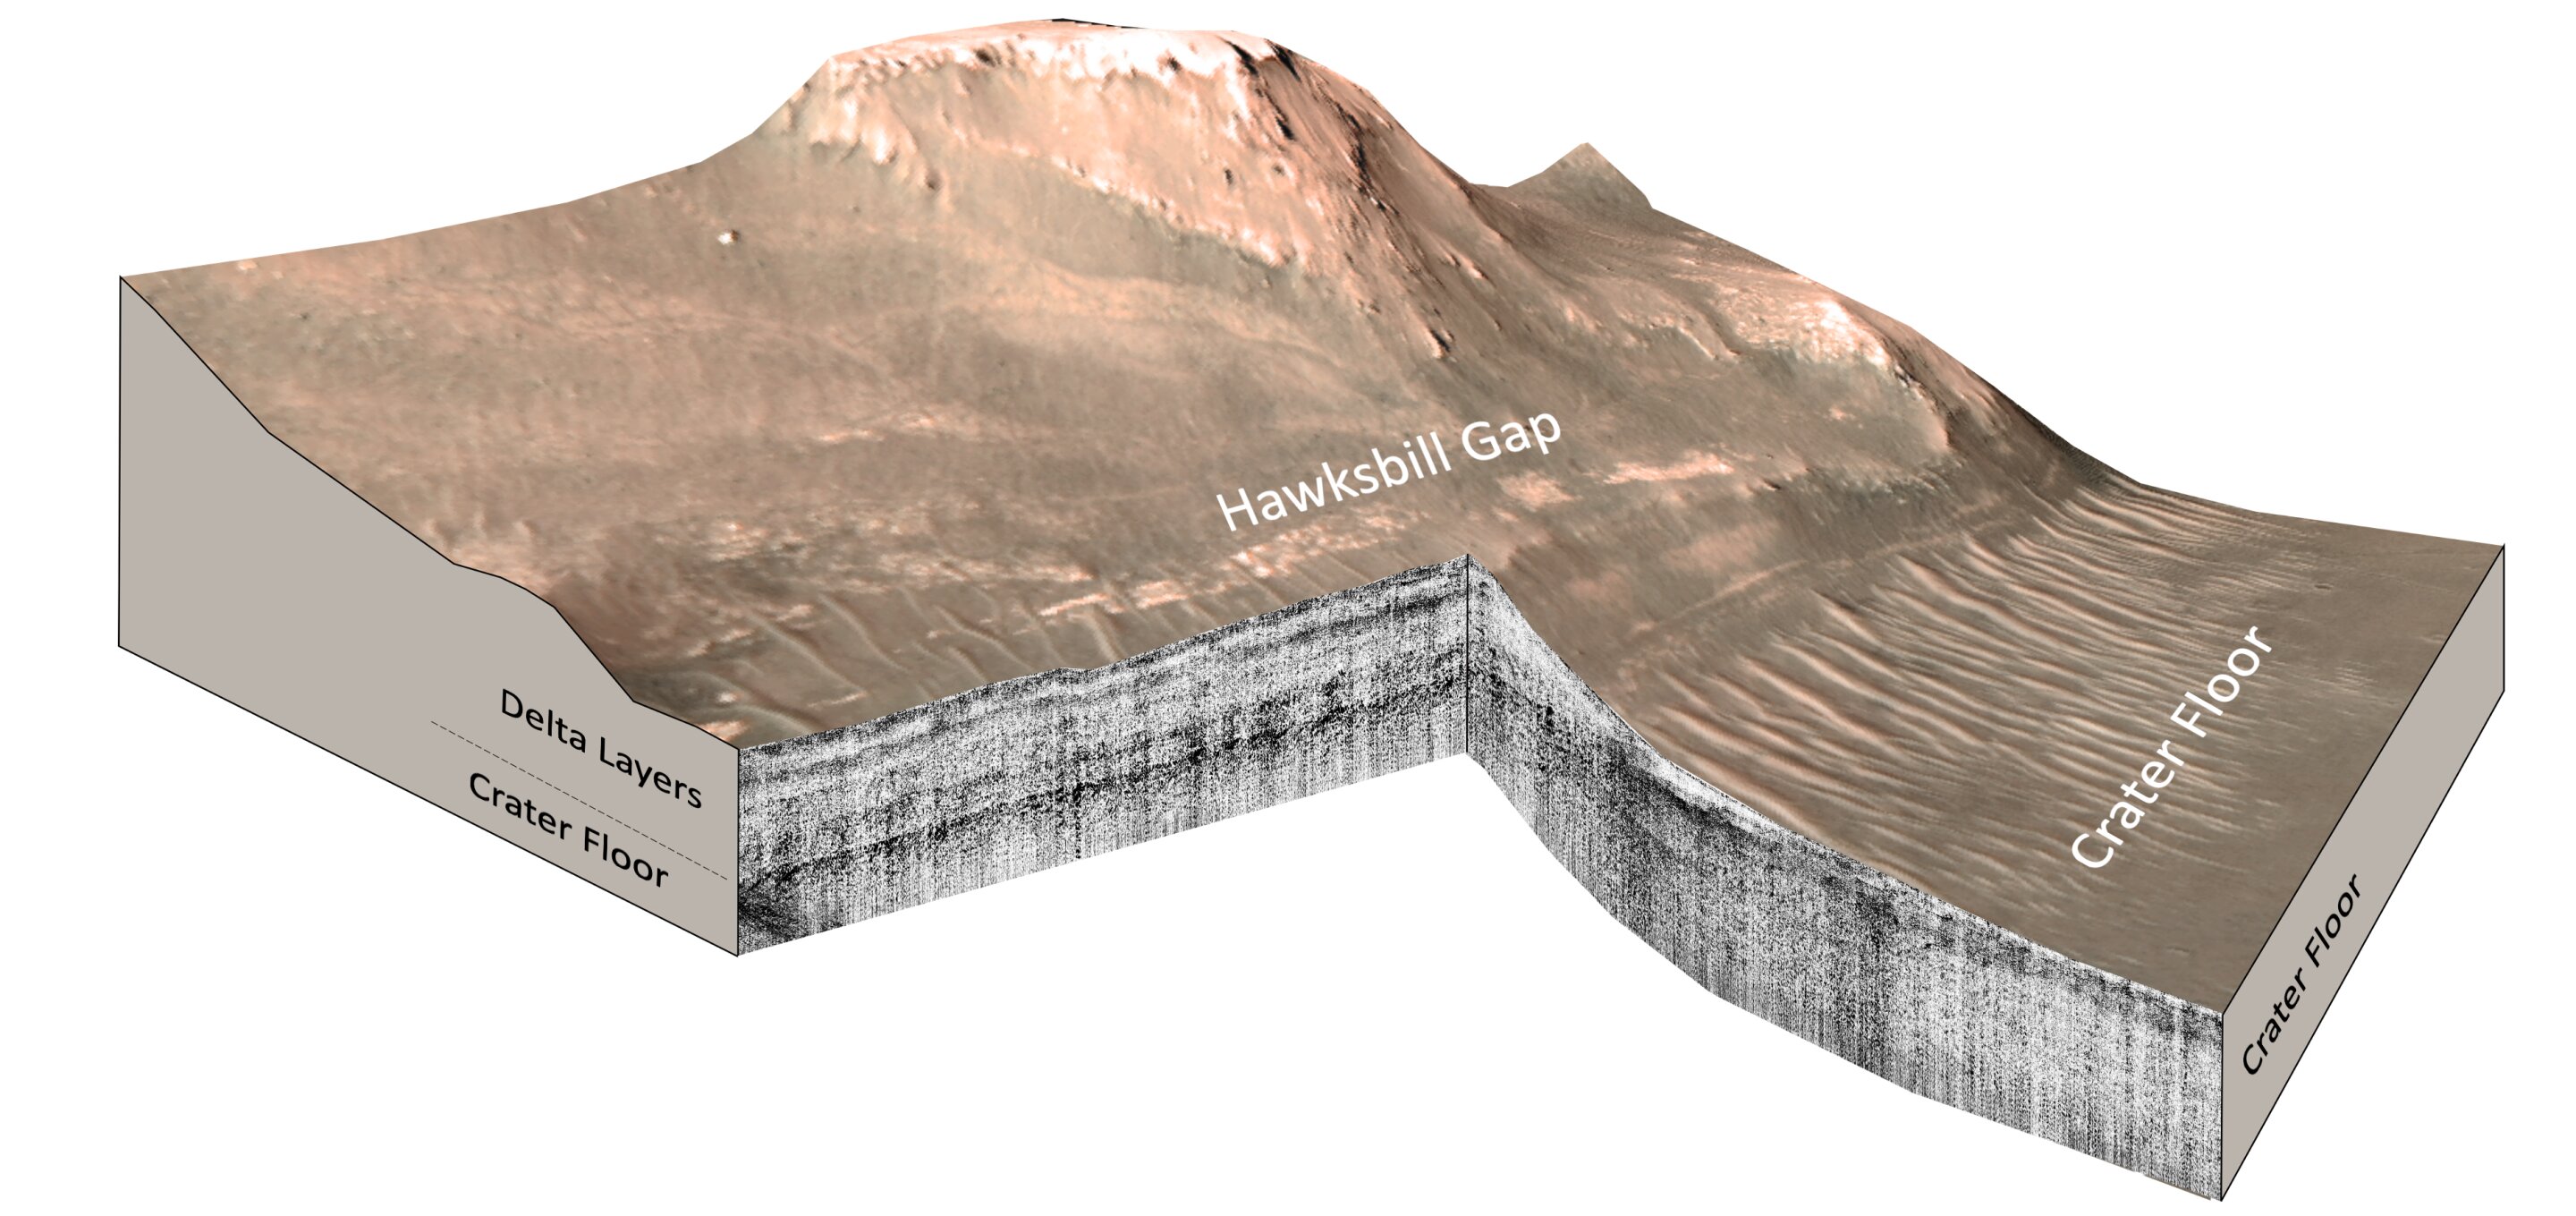 Potwierdzenie istnienia starożytnego jeziora na Marsie daje nadzieję, że próbki gleby i skał na pokładzie łazika Perseverance zawierają ślady życia